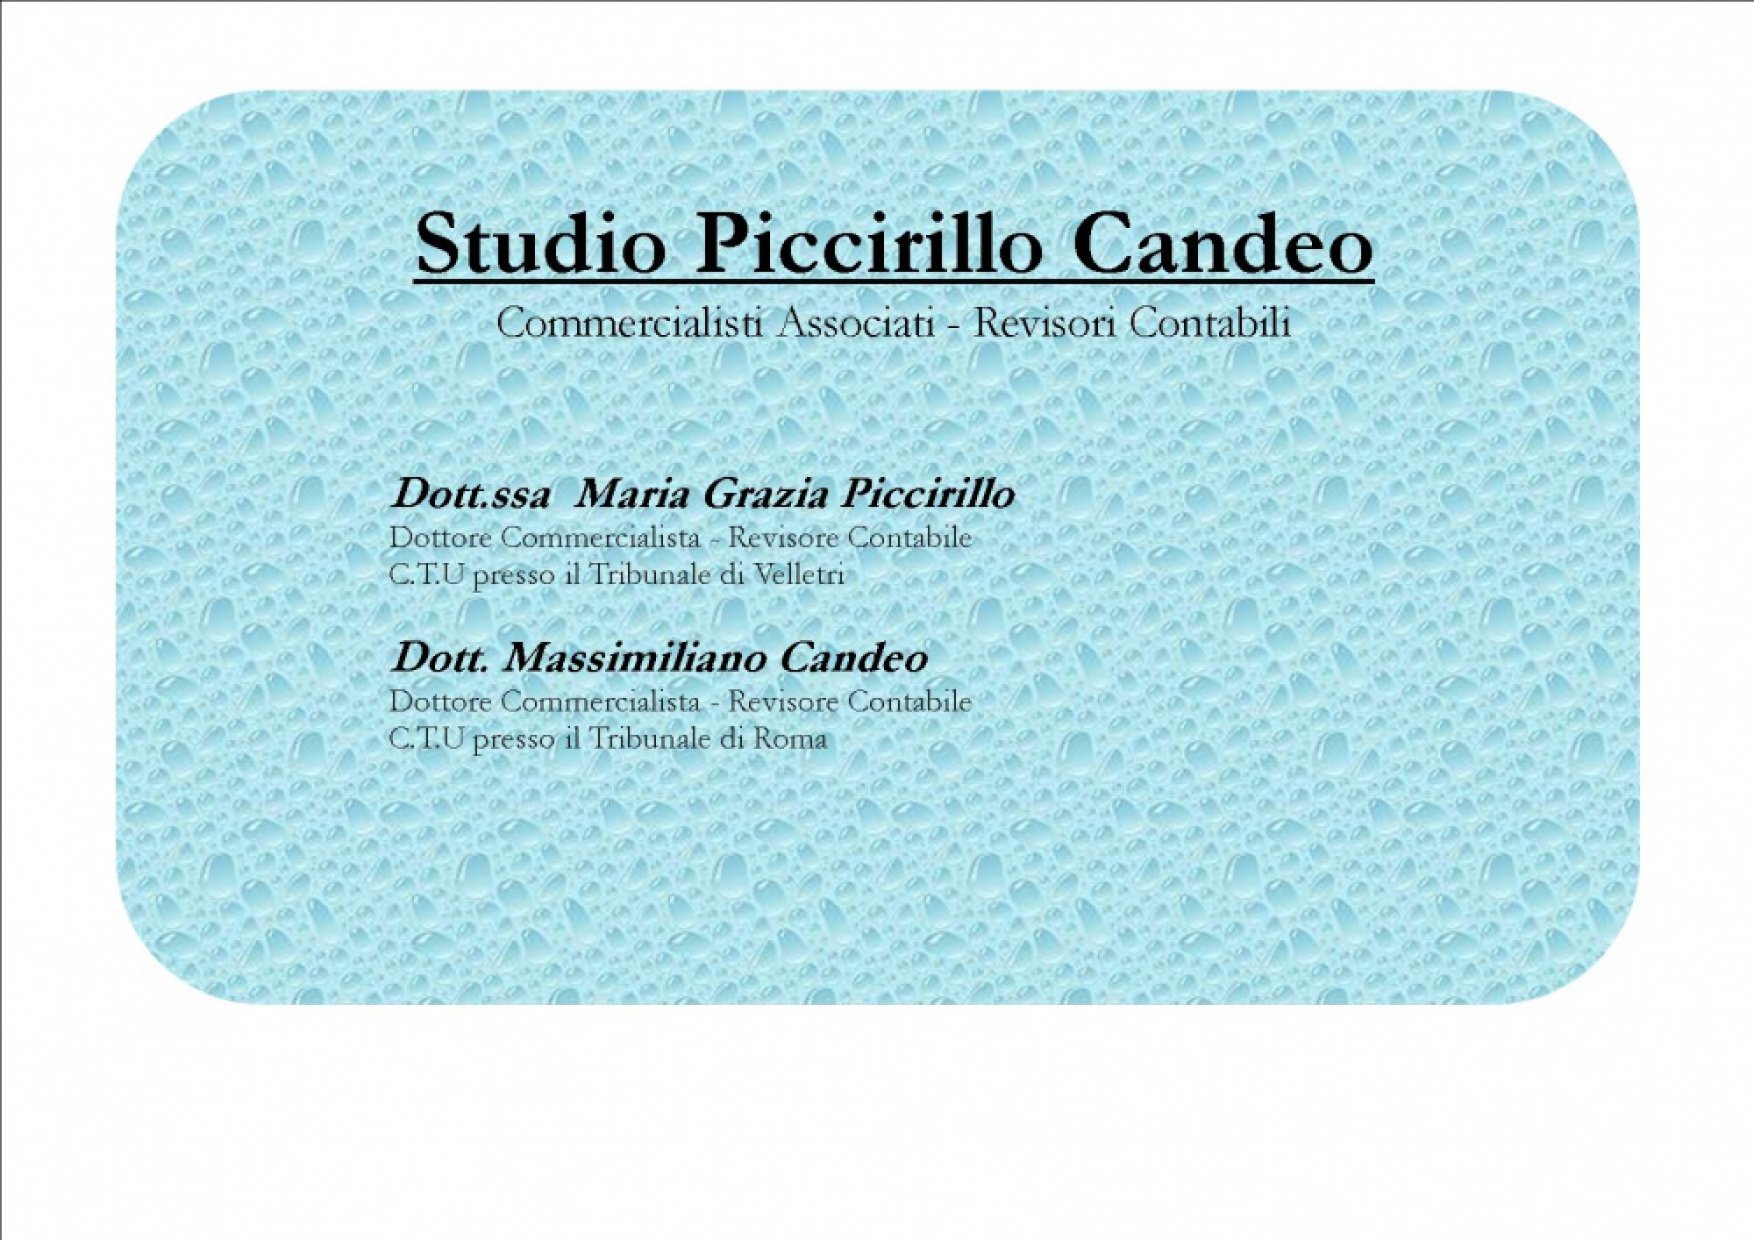 Studio Piccirillo Candeo